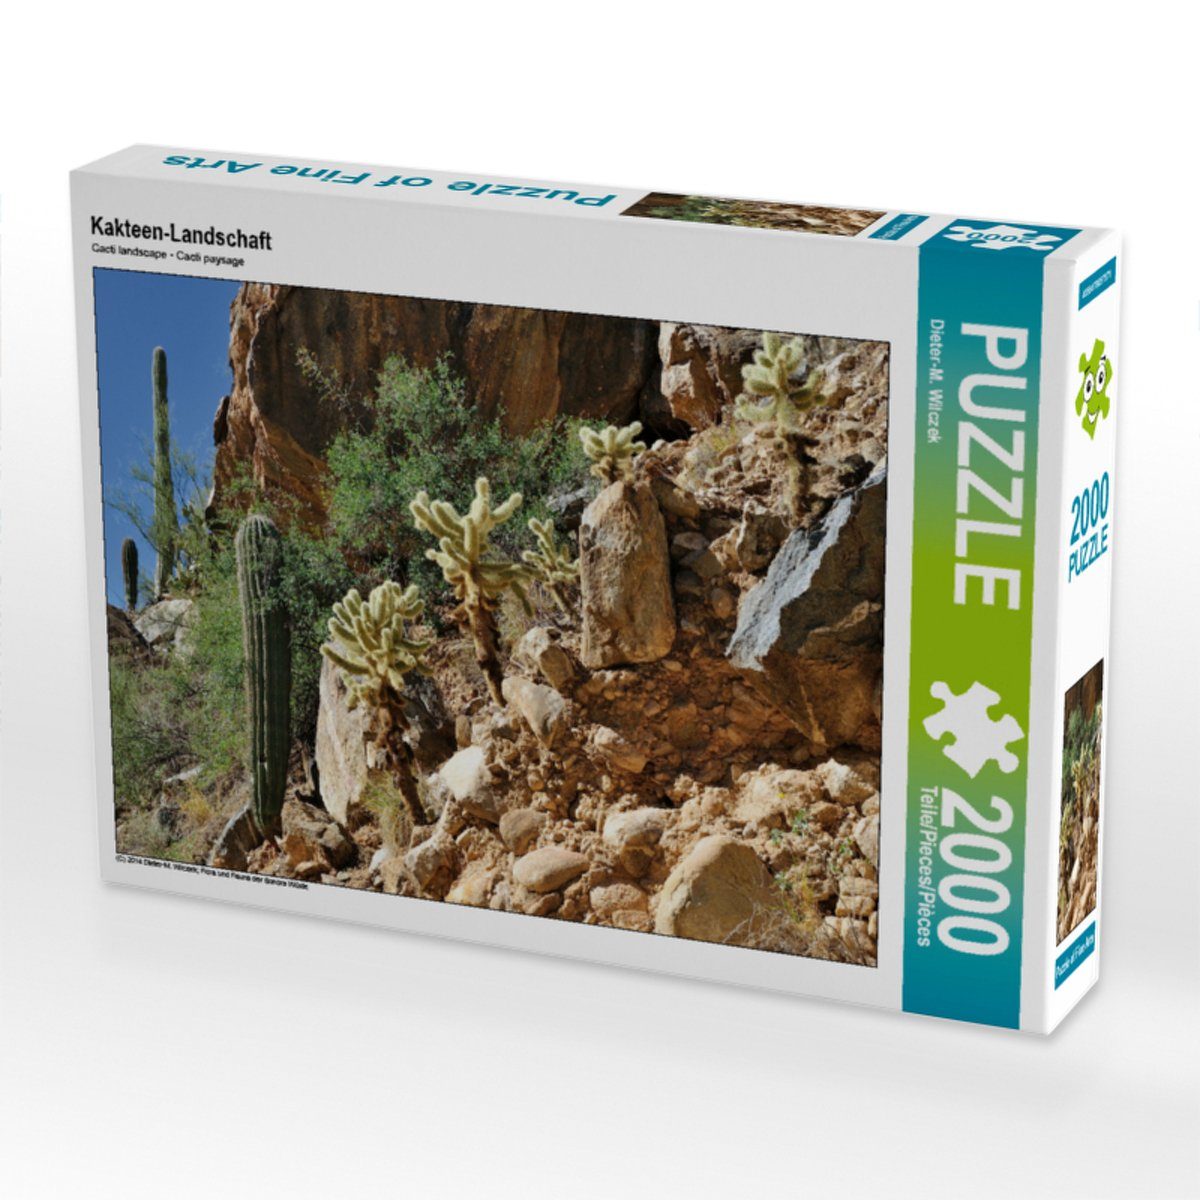 Kakteen-Landschaft Puzzle 2000 CALVENDO x von Puzzle Bild 67 cm Puzzleteile Foto-Puzzle 2000 Dieter 90 Lege-Größe Wilczek, CALVENDO Teile